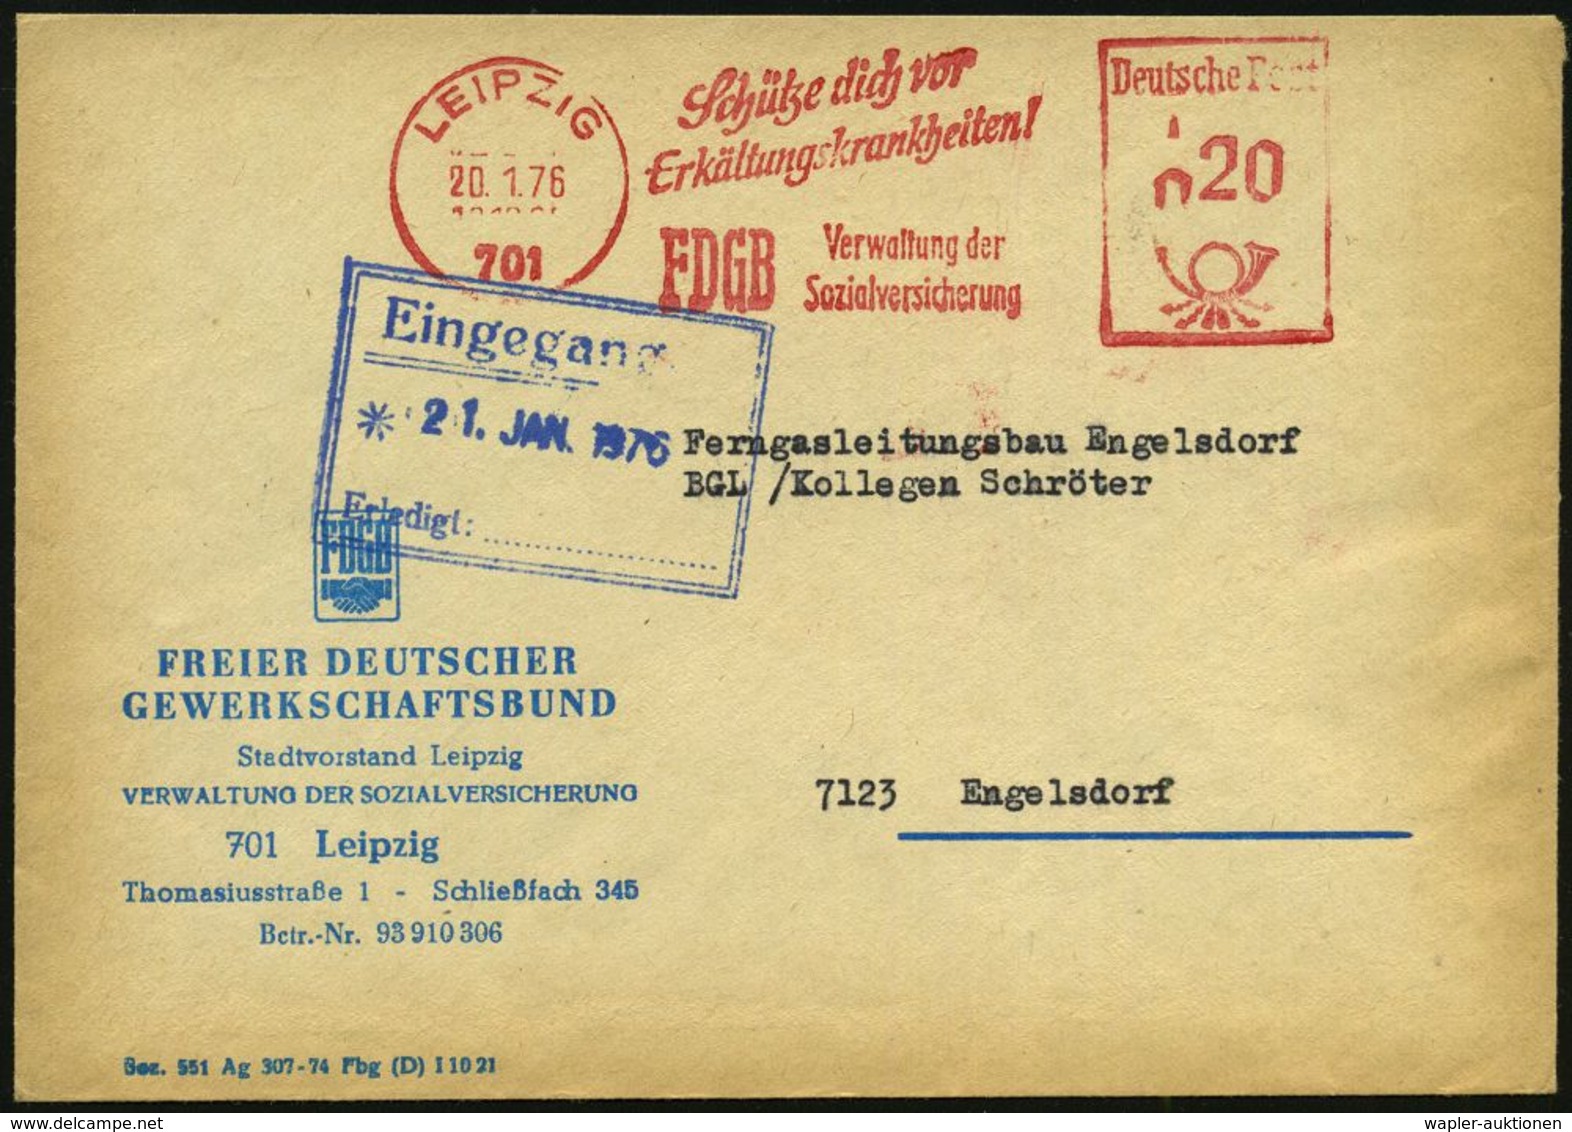 KRANKHEITEN : 701 LEIPZIG/ Schütze Dich Vor/ Erkältungskrankheiten!/ FDGB.. 1976 (20.1.) AFS Mit PLZ Auf Dienst-Bf.: FDG - Disease